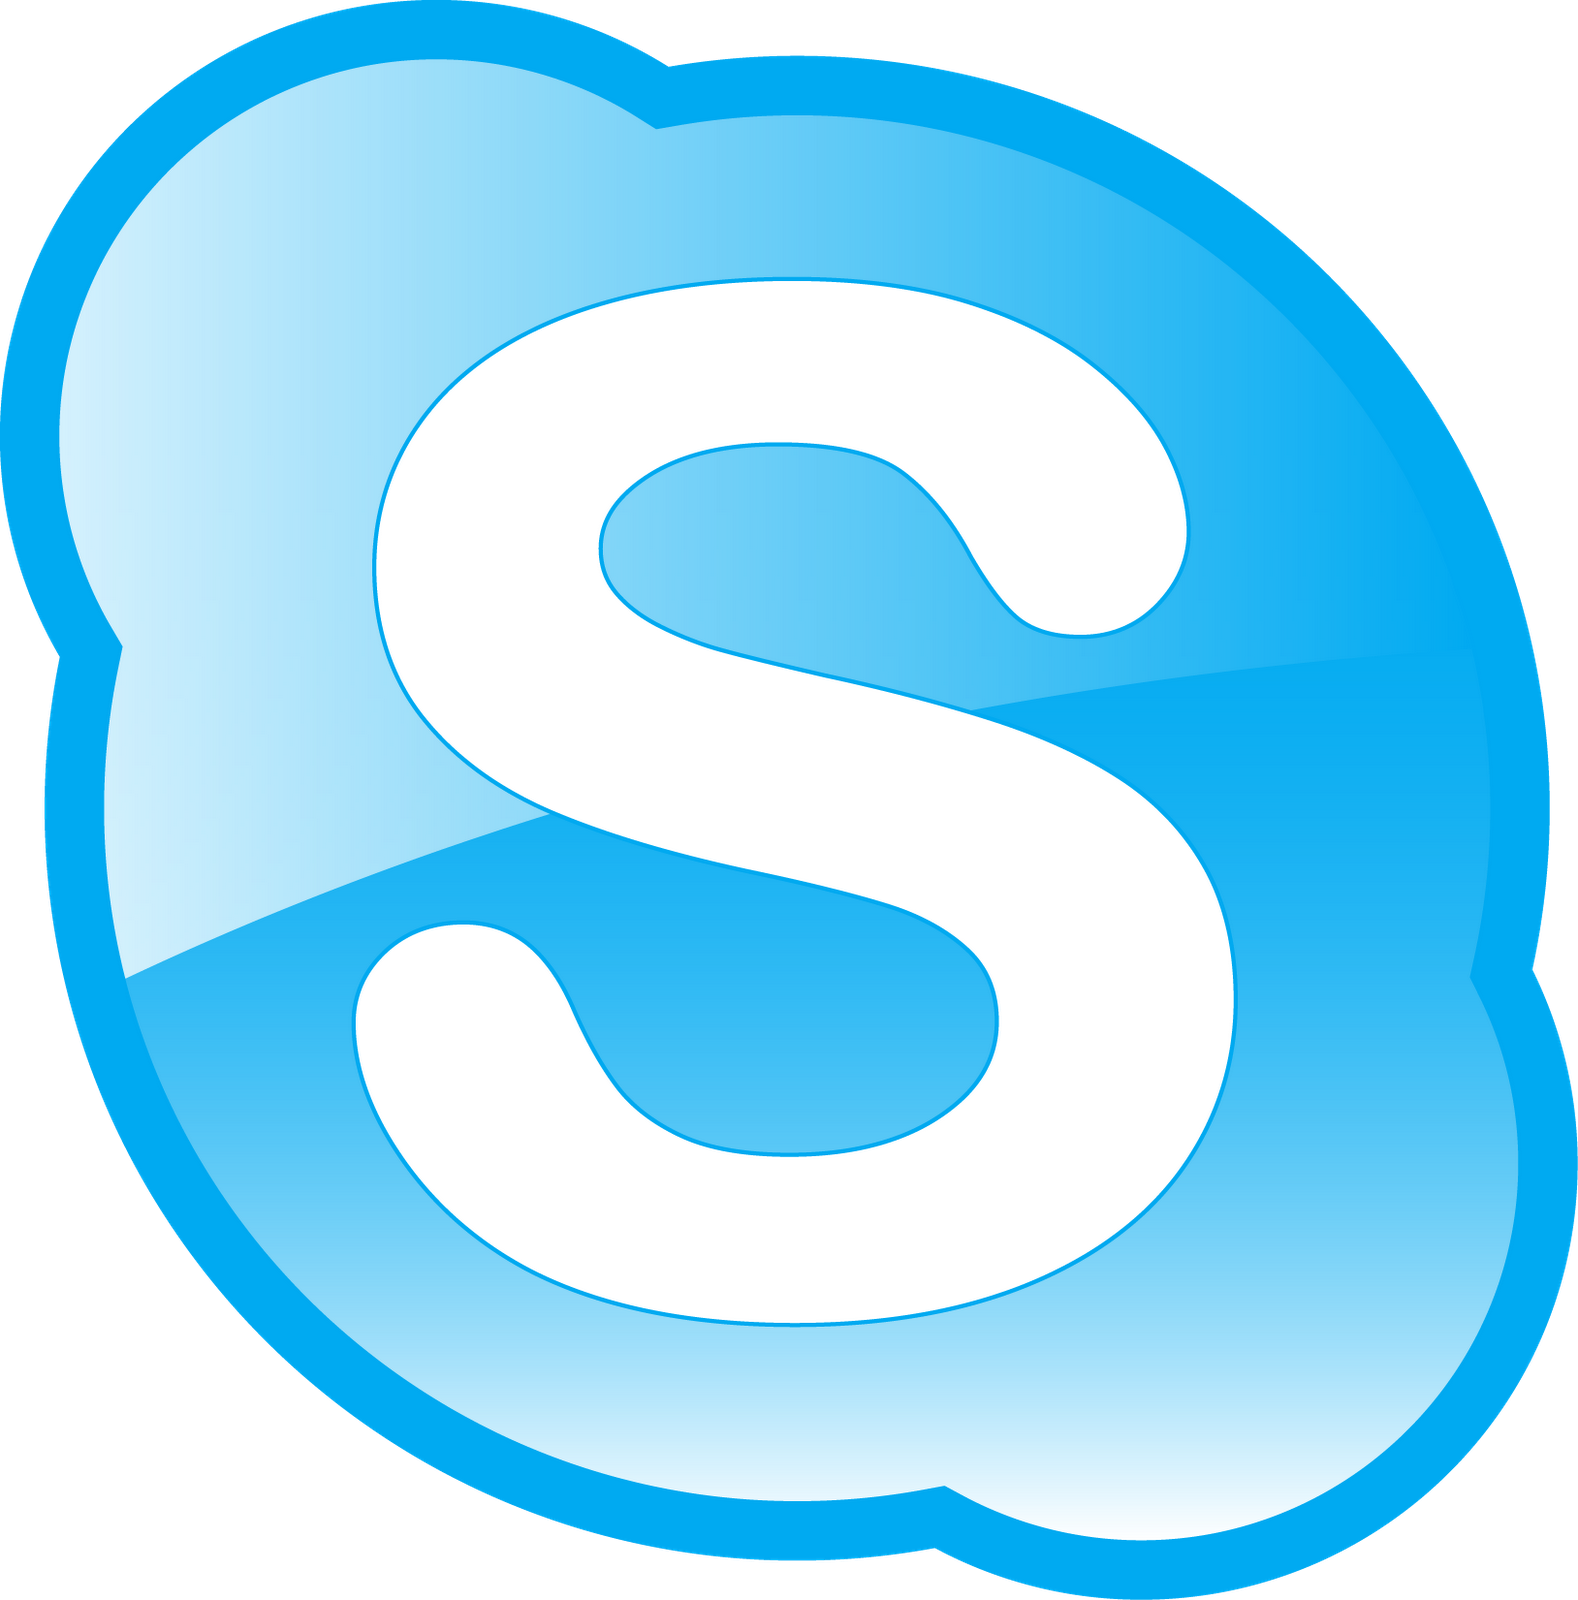 Skype Le Logiciel Innovant Histoires Des Succès Et Réussites Sur